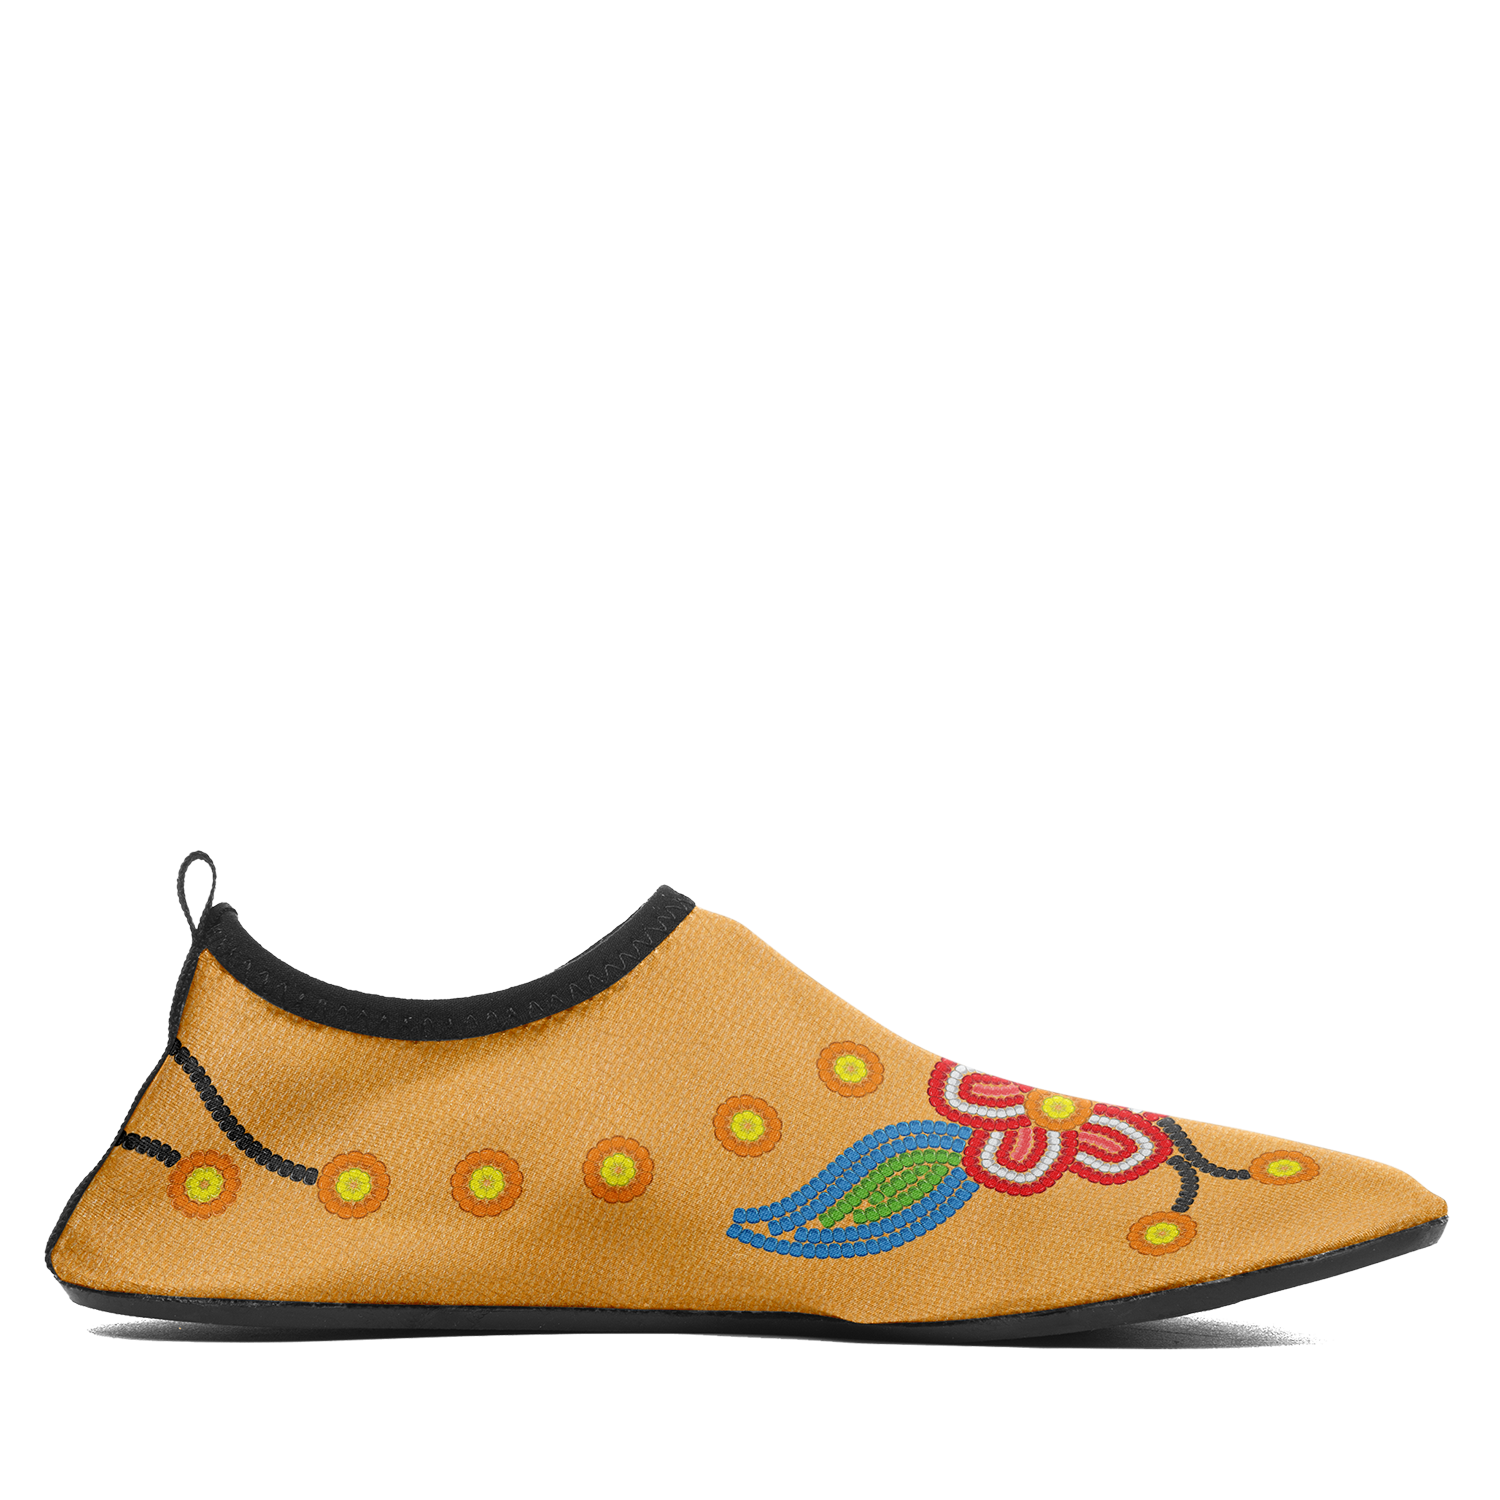 Desert Dream 3 Kid's Sockamoccs Slip On Shoes